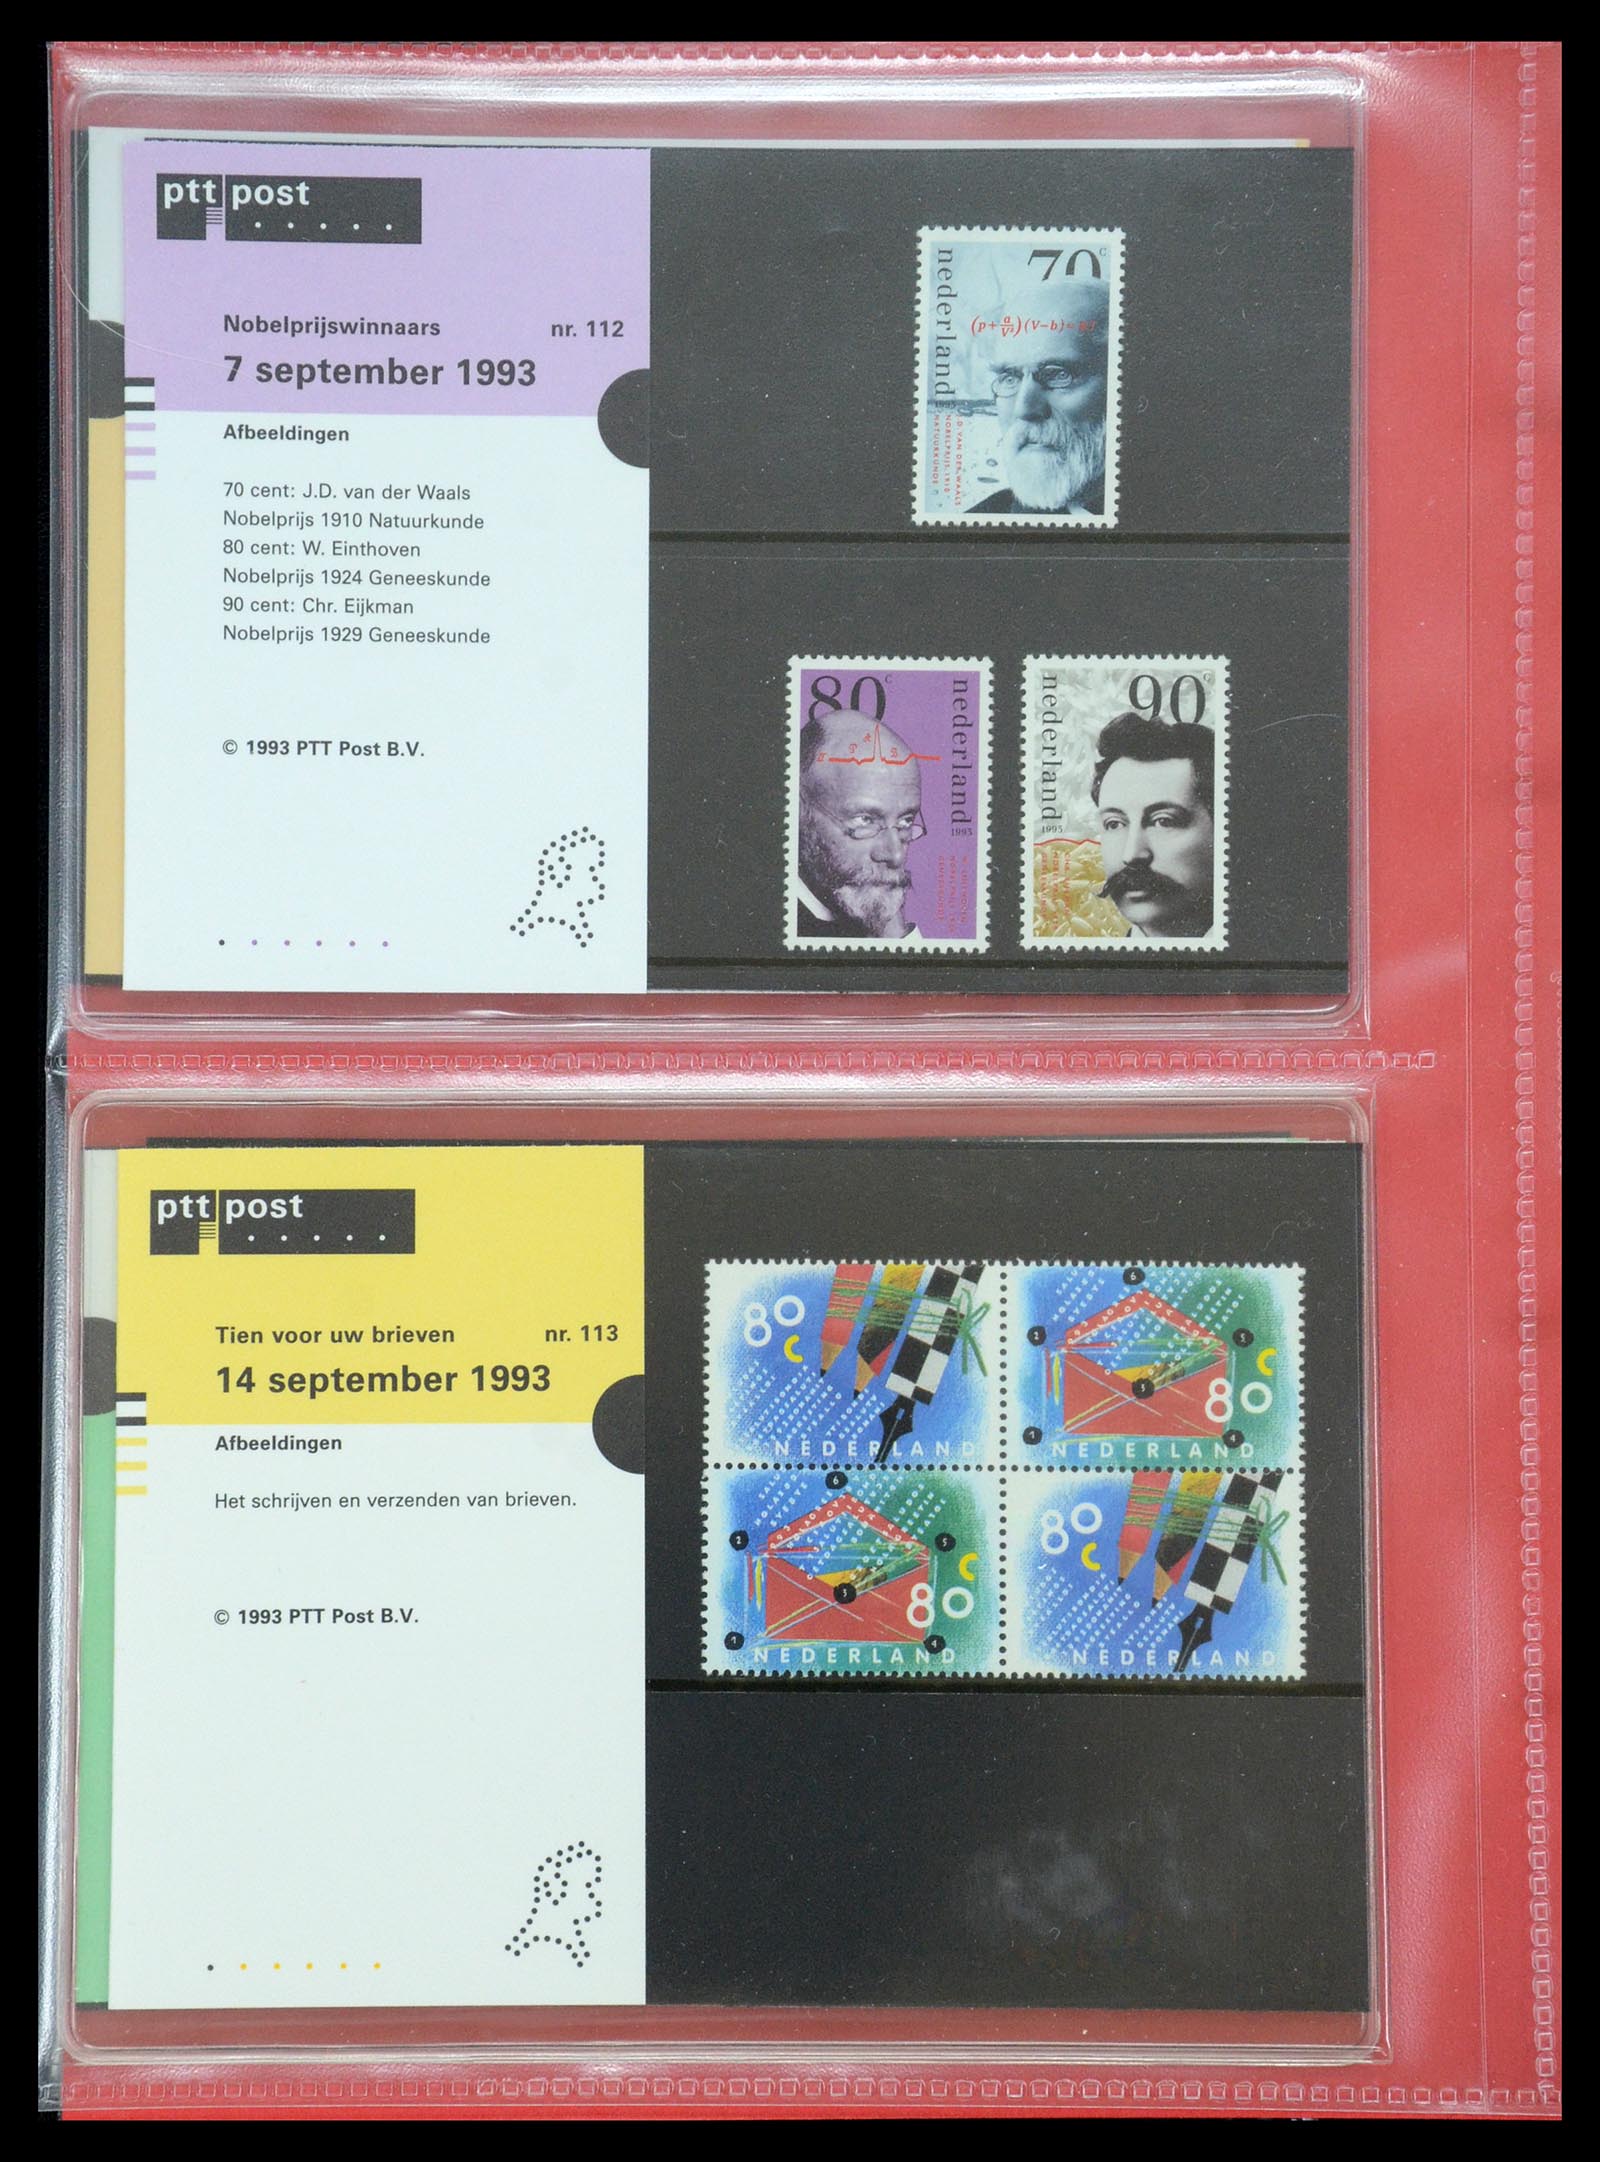 35692 058 - Stamp Collection 35692 Netherlands presentation packs 1982-2021!!